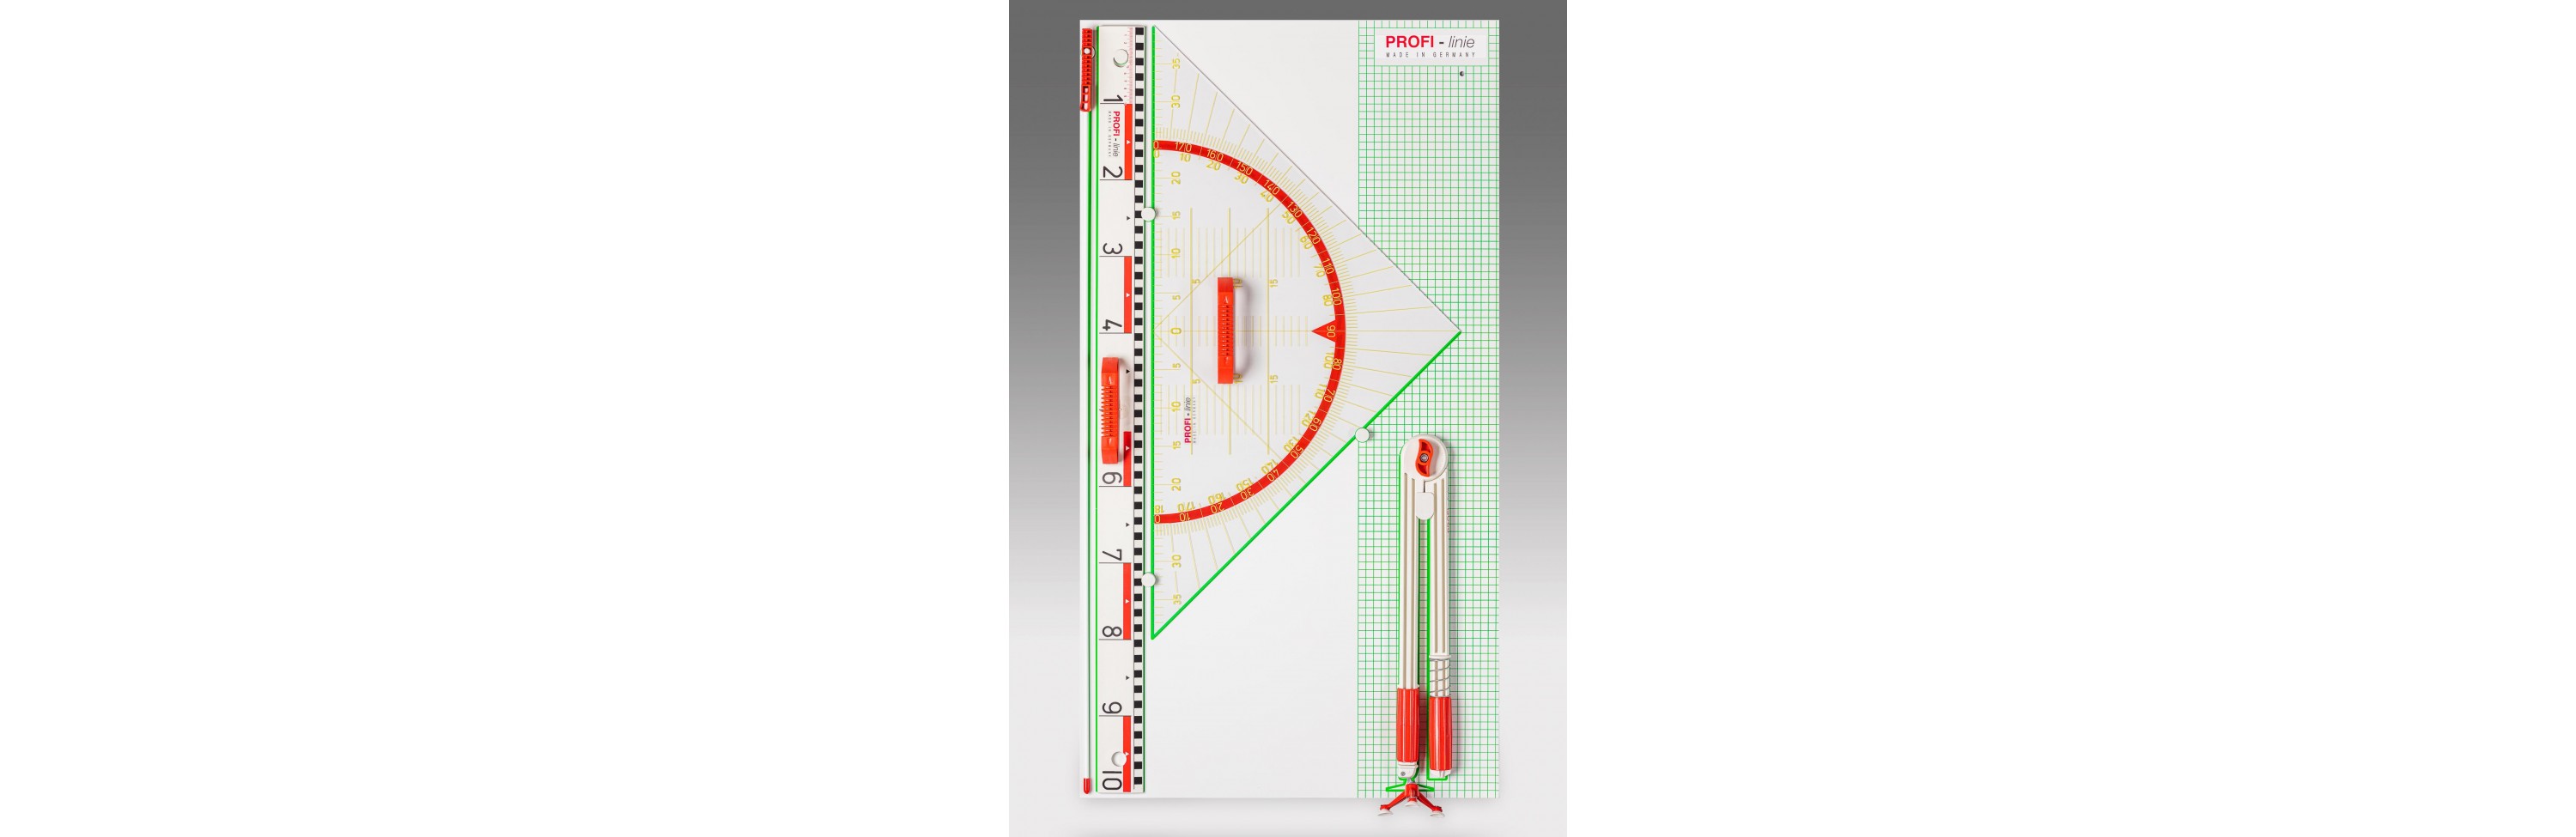 Wissner® aktiv lernen - Wandtafelgerätesatz PROFI-linie II (mit 80 cm Geowinkel) RE-Plastic®